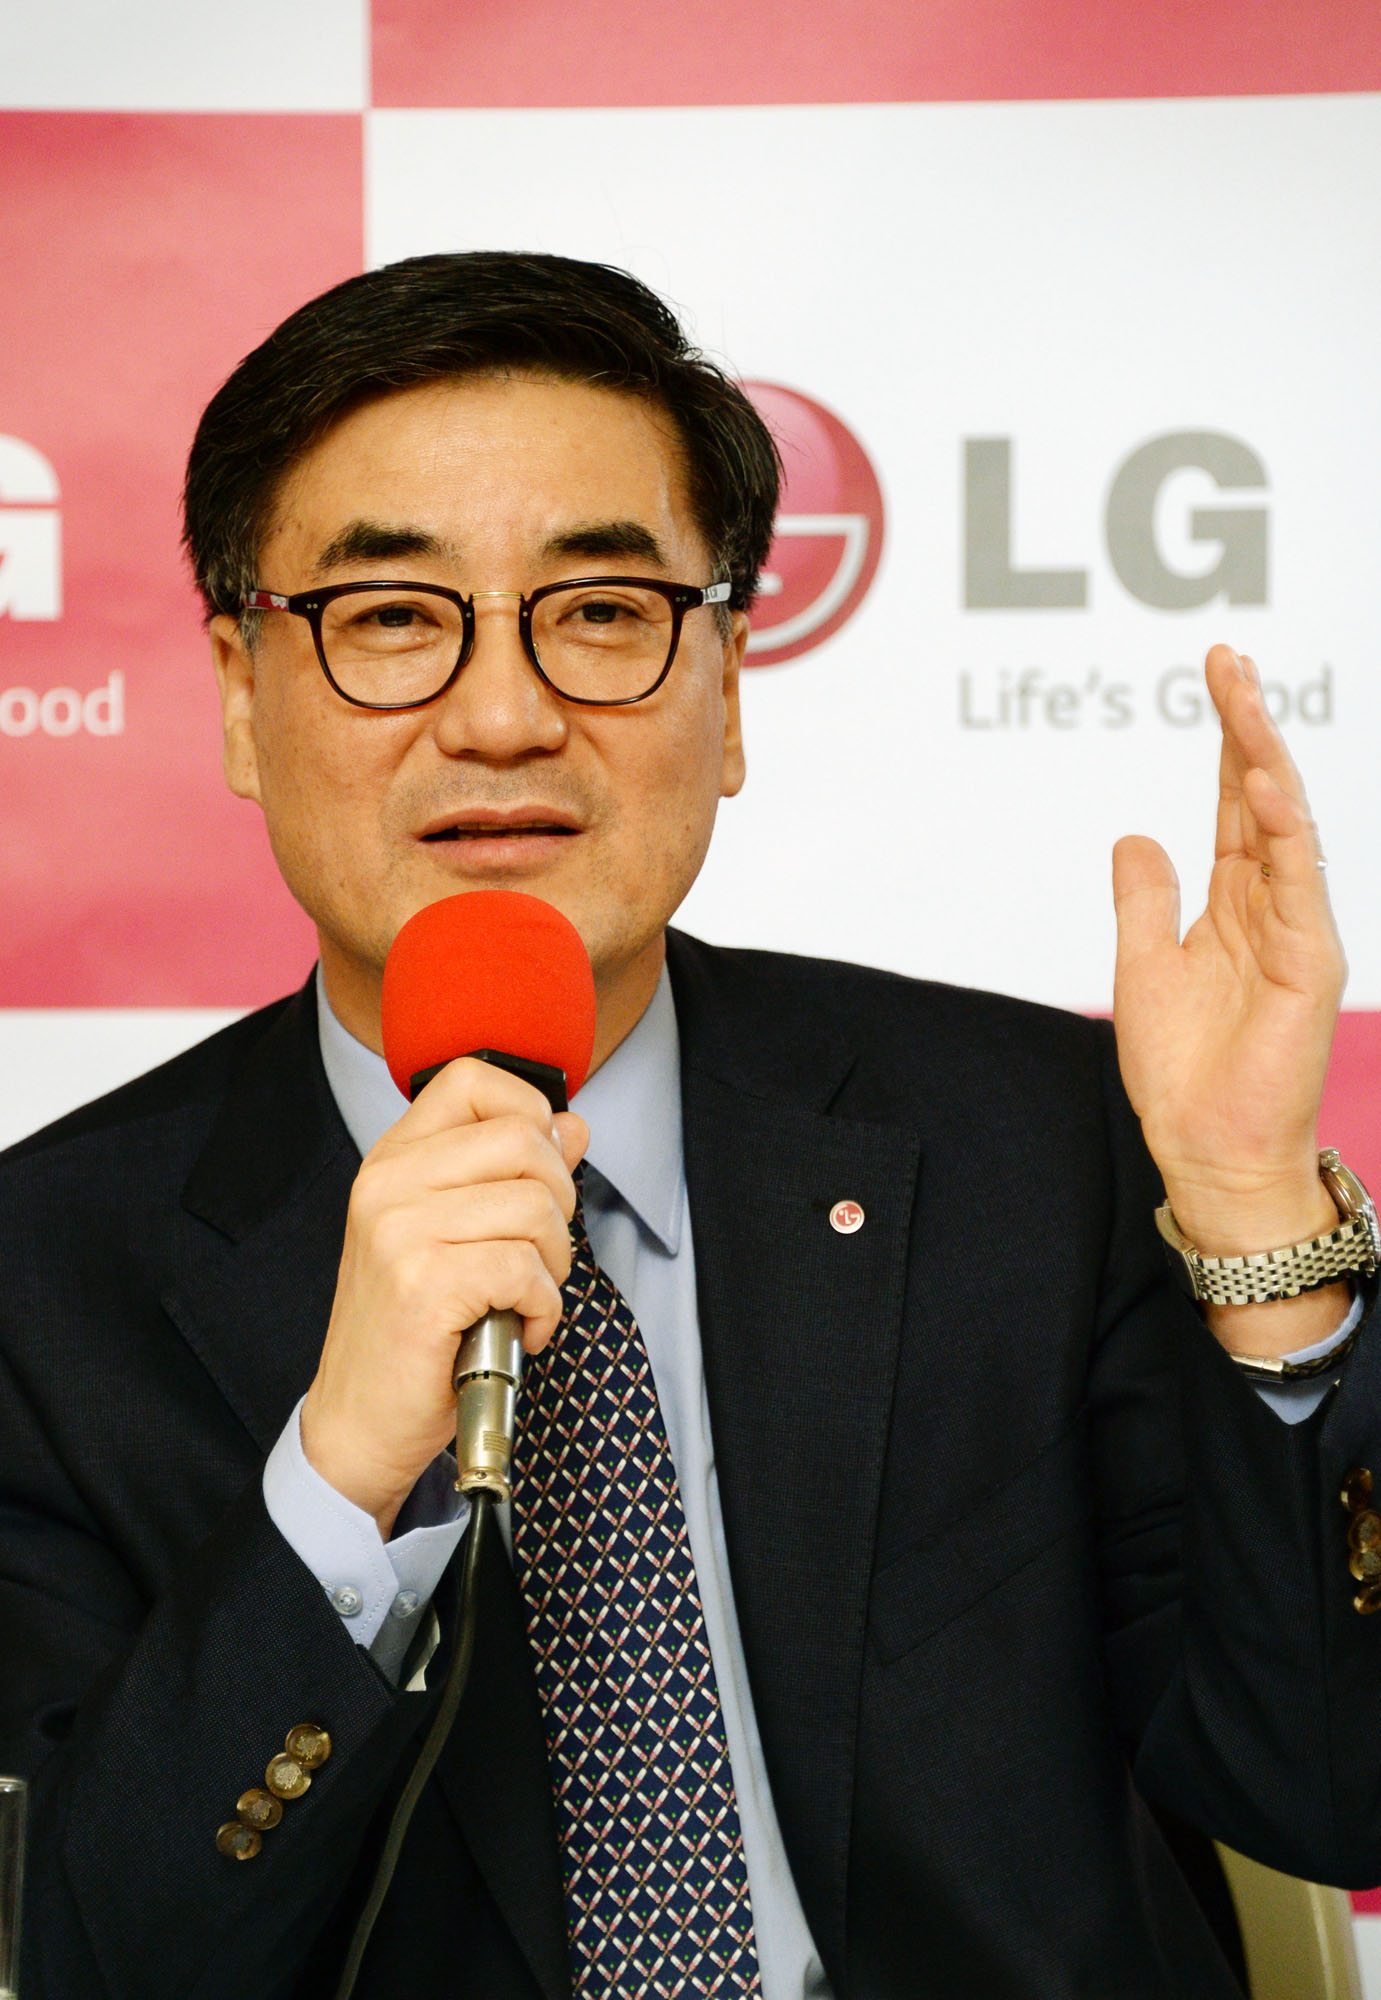 Президент и CEO компании LG Хэвис Квон